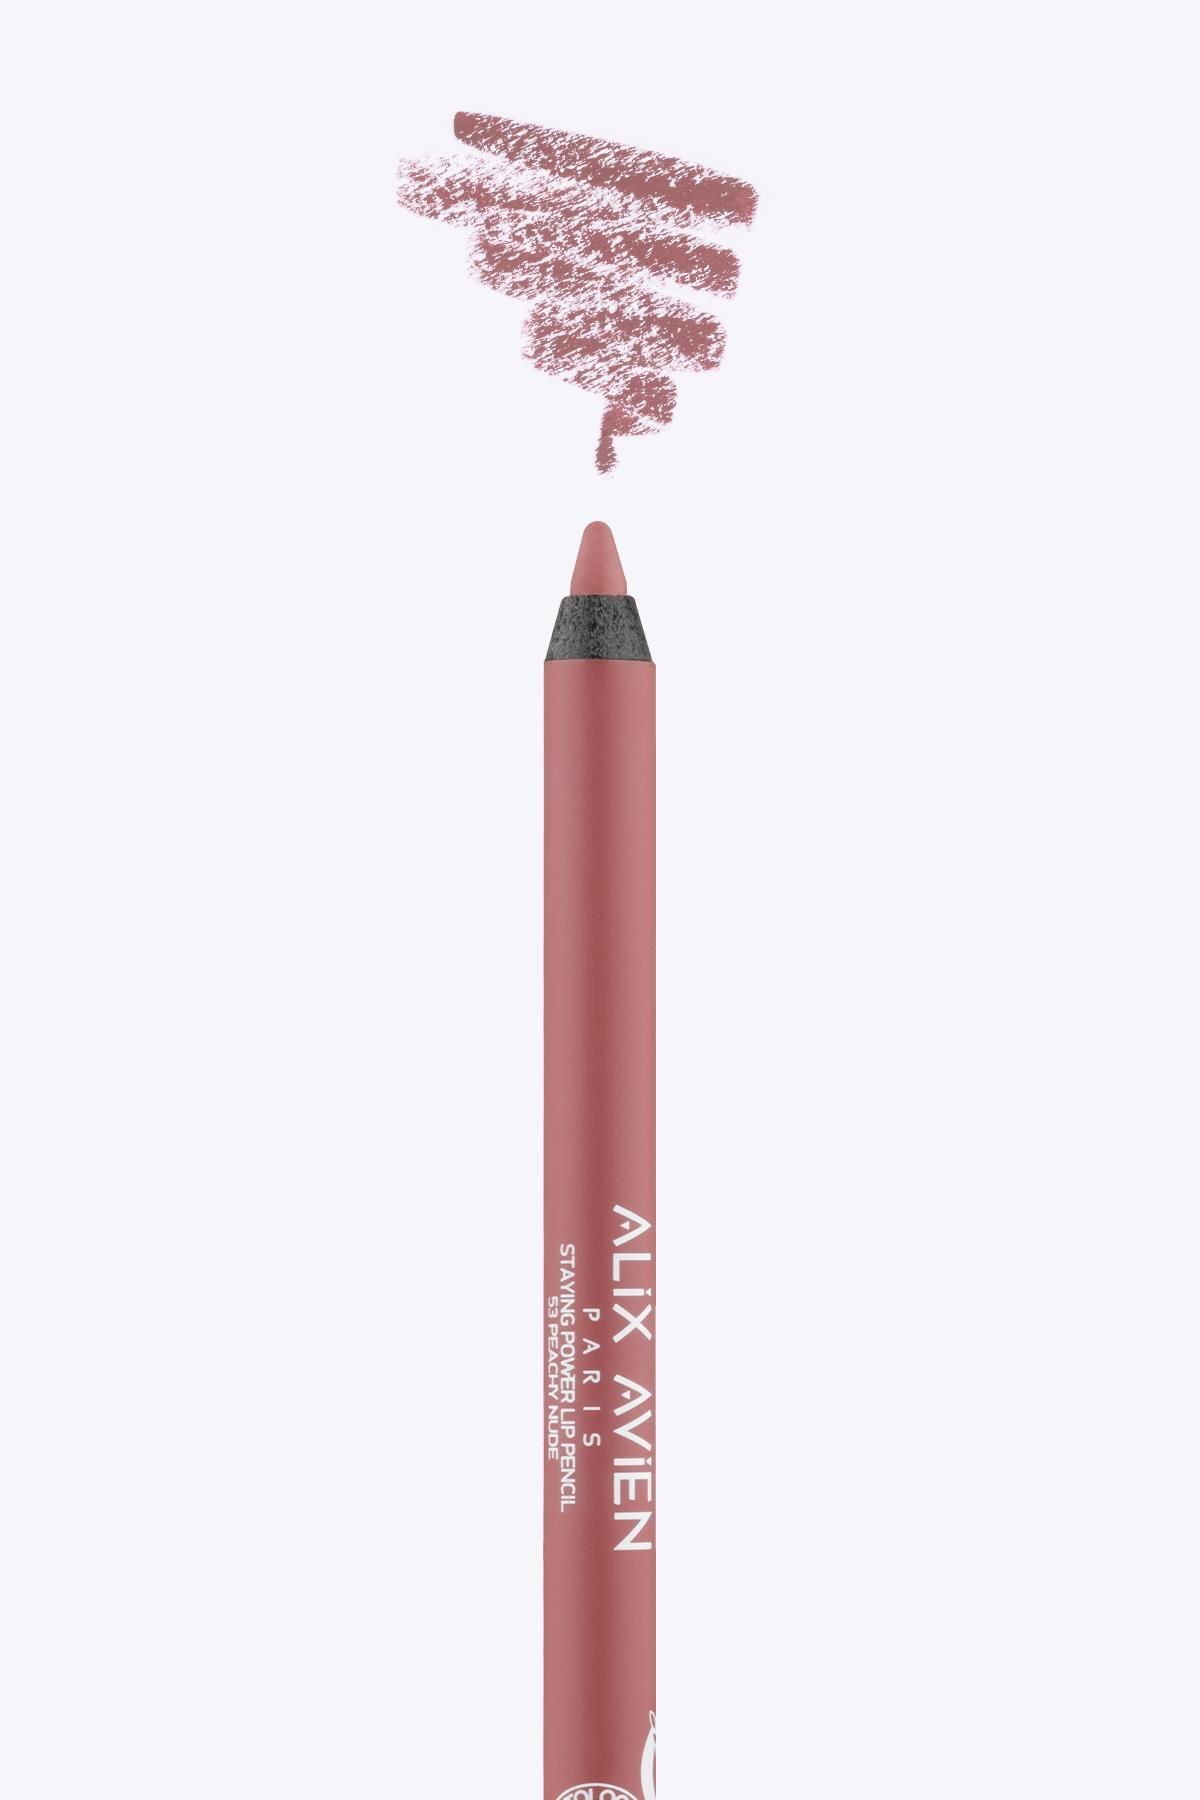 Alix Avien Uzun Süre Kalıcı Suya Dayanıklı Dudak Kalemi - Staying Power Lip Pencil 53 Peachy Nude